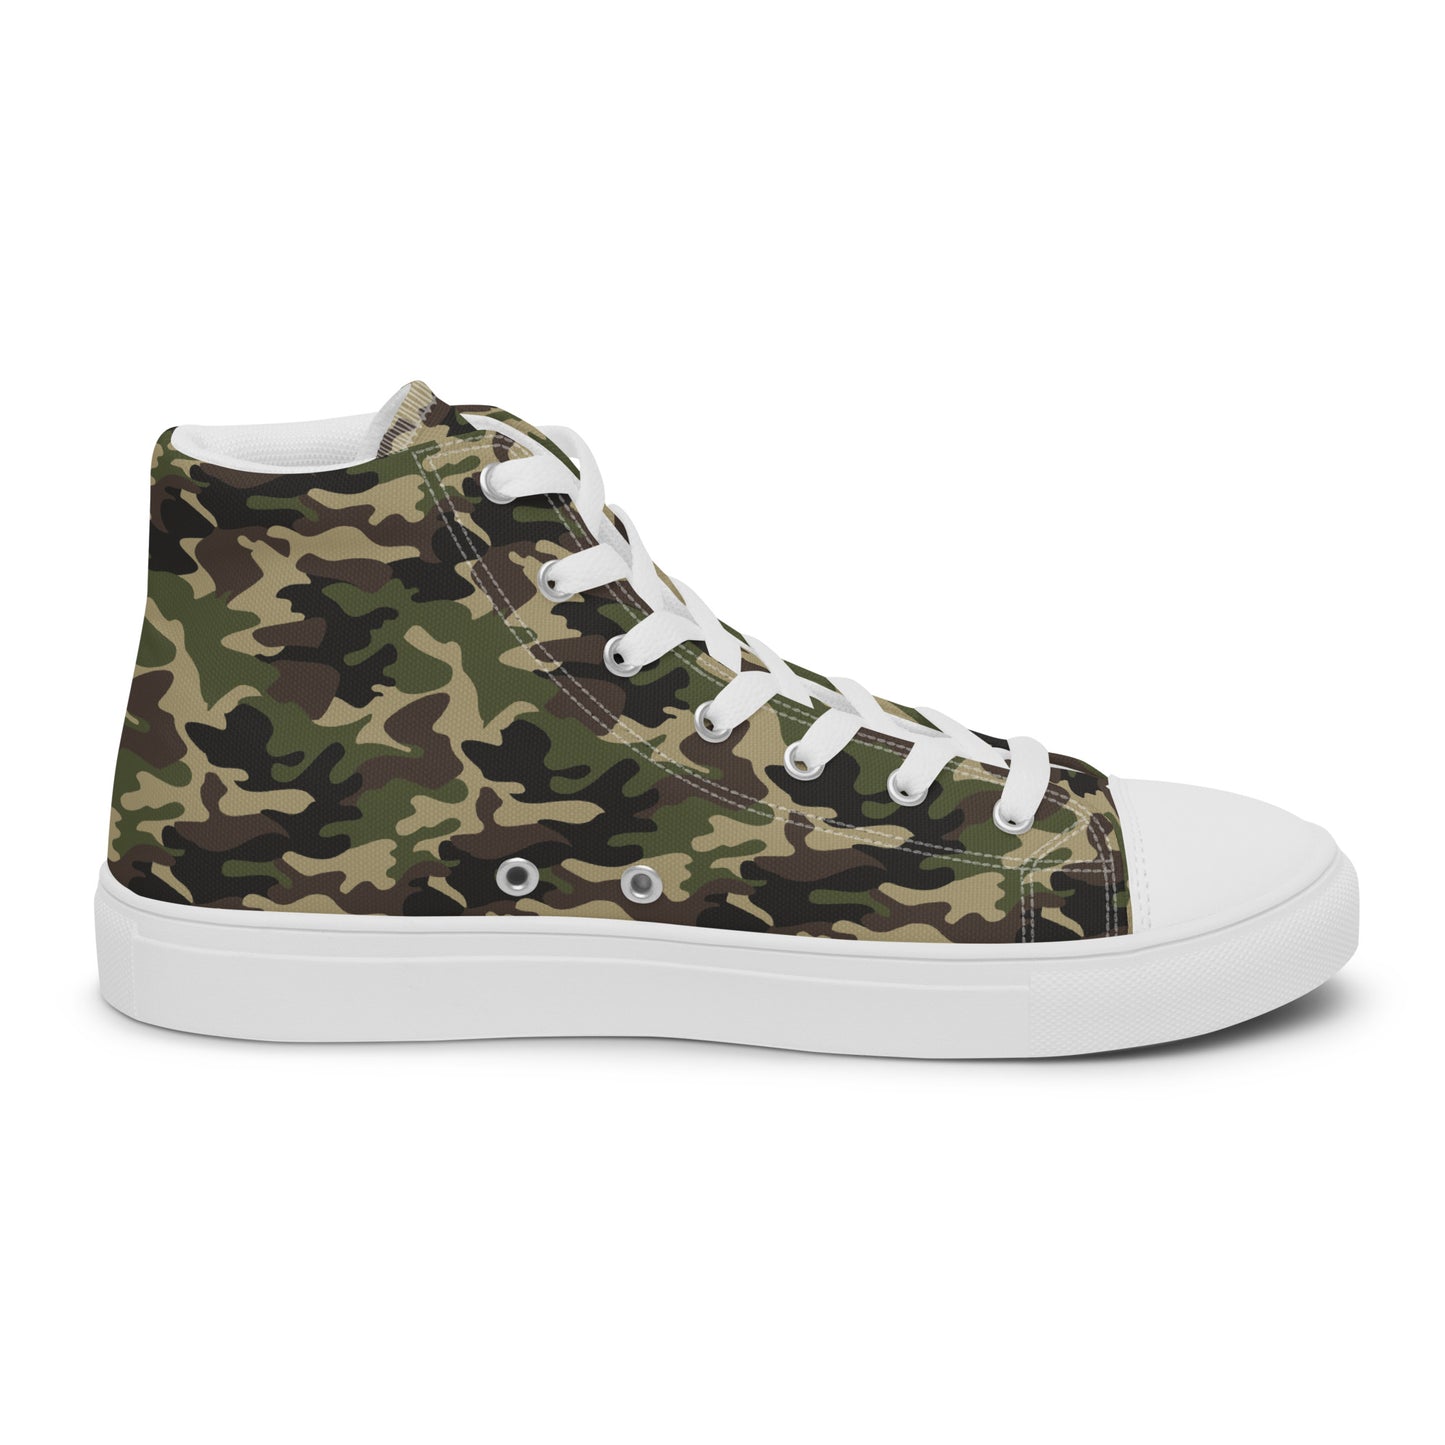 Men’s Camouflage Sneakers